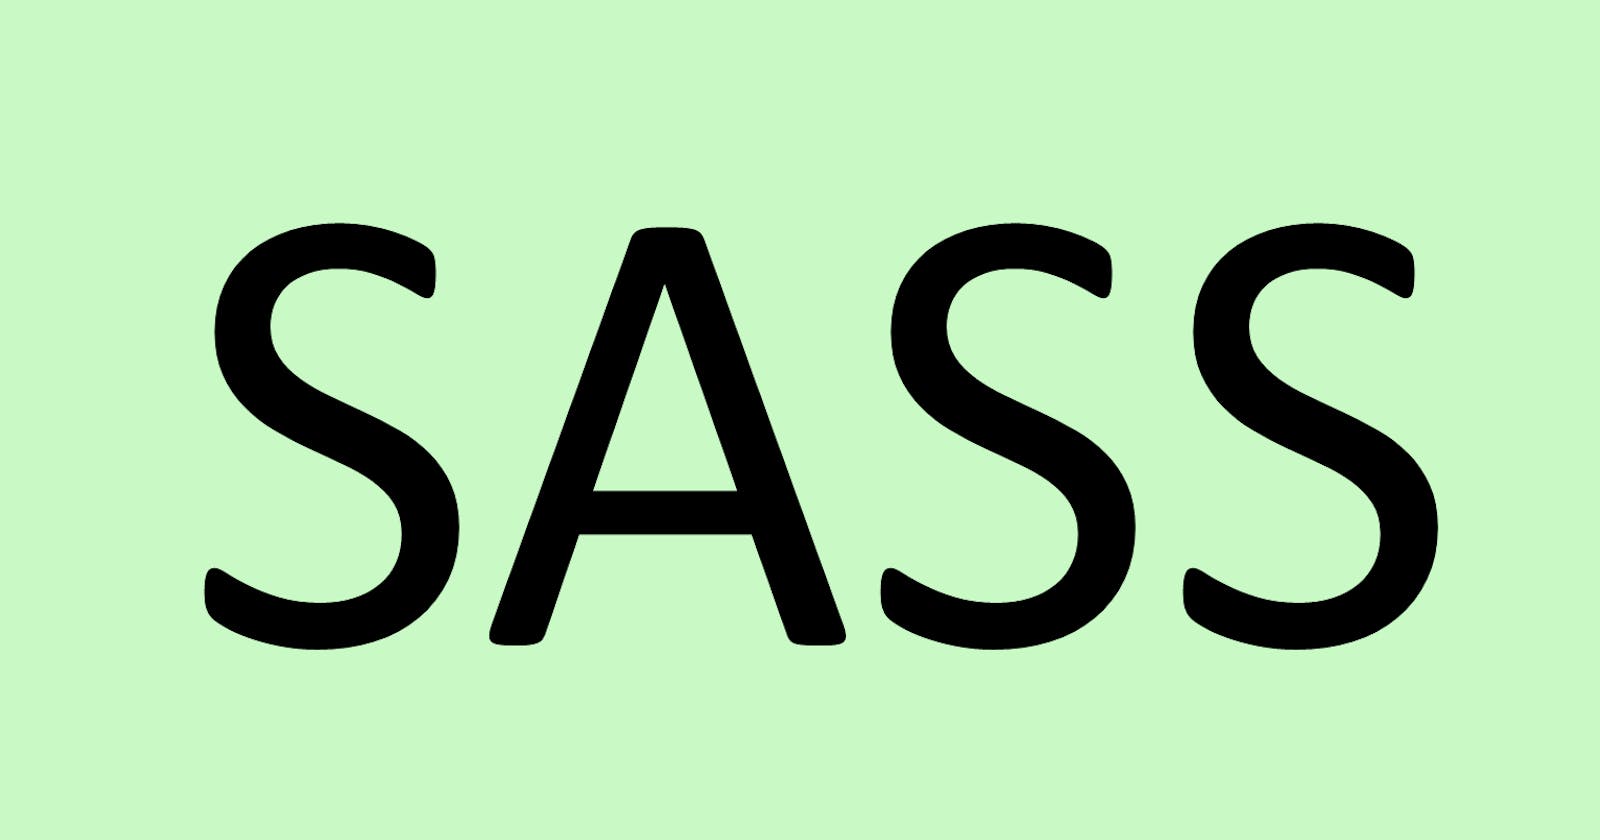 SASS - An Overview